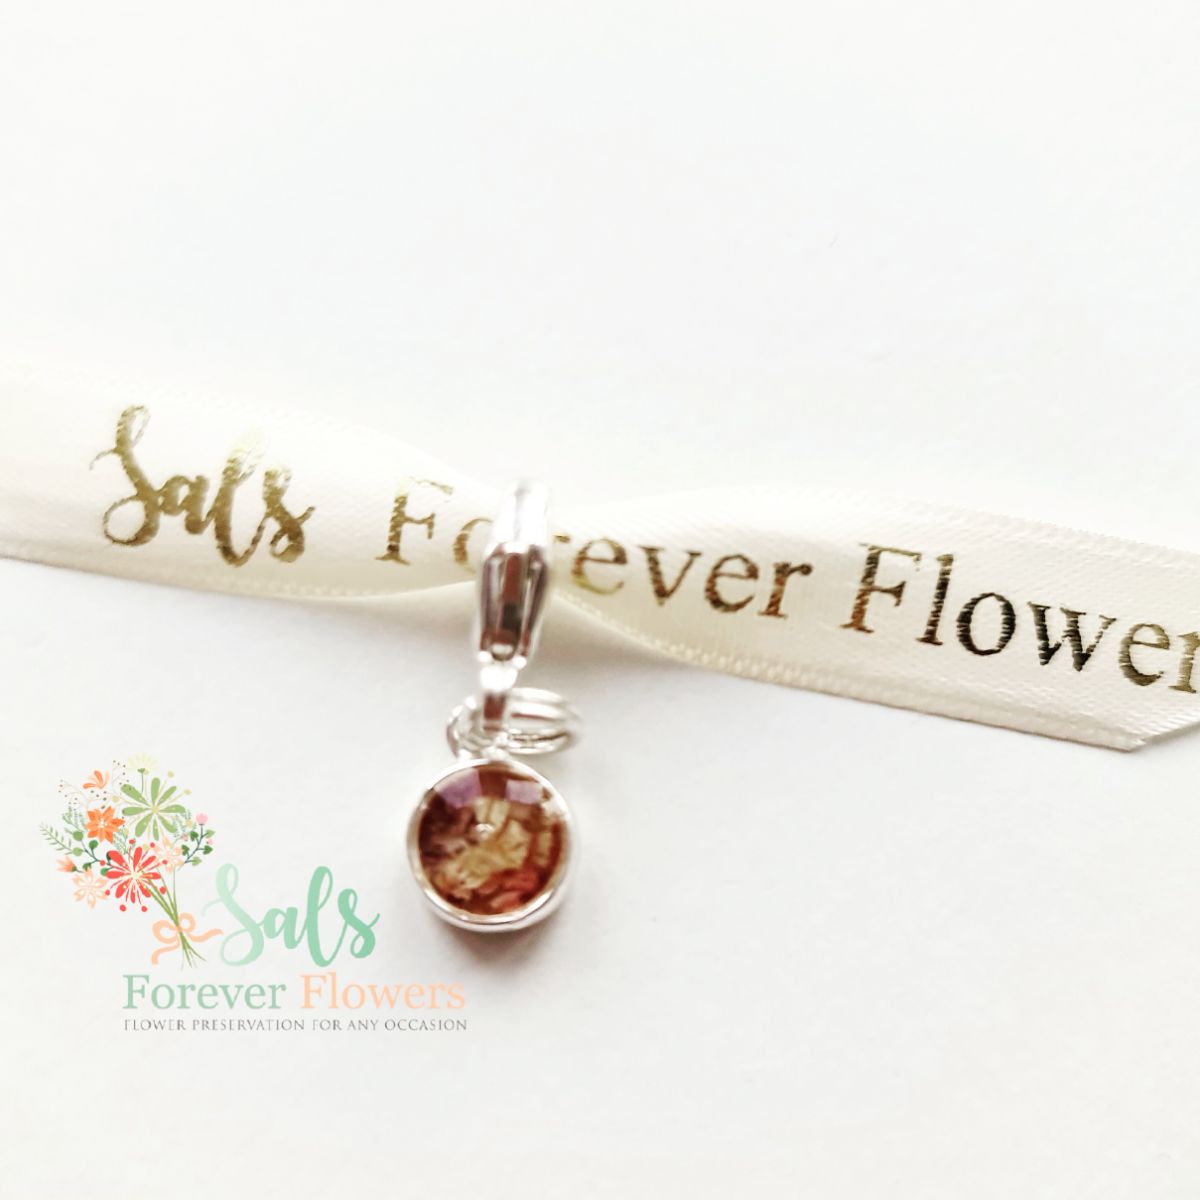 Sals Forever Flowers Ltd-Image-61